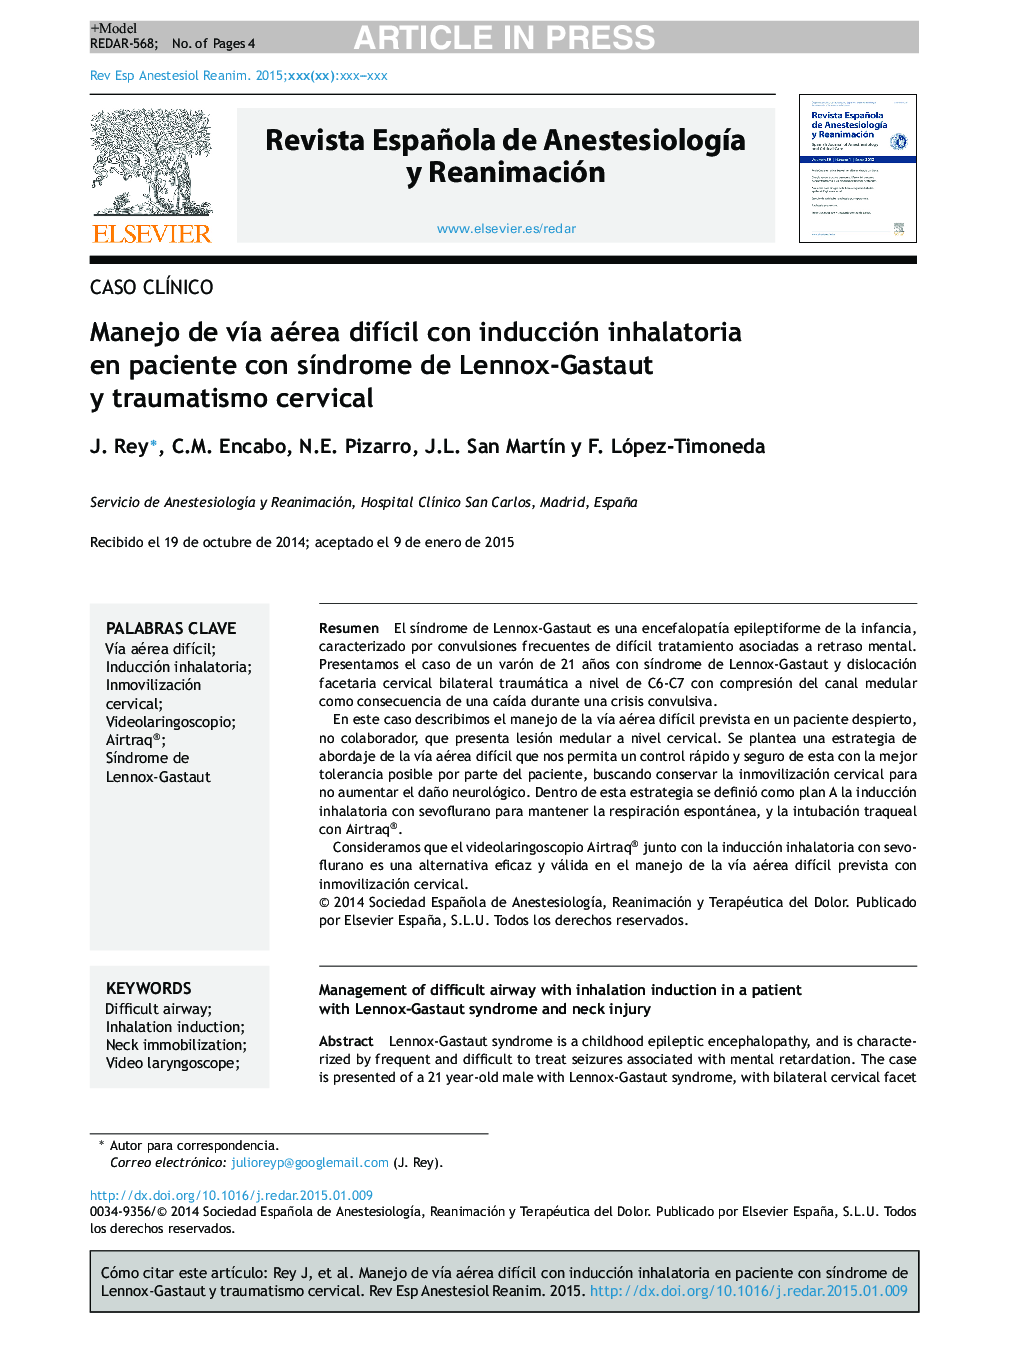 Manejo de vÃ­a aérea difÃ­cil con inducción inhalatoria en paciente con sÃ­ndrome de Lennox-Gastaut y traumatismo cervical